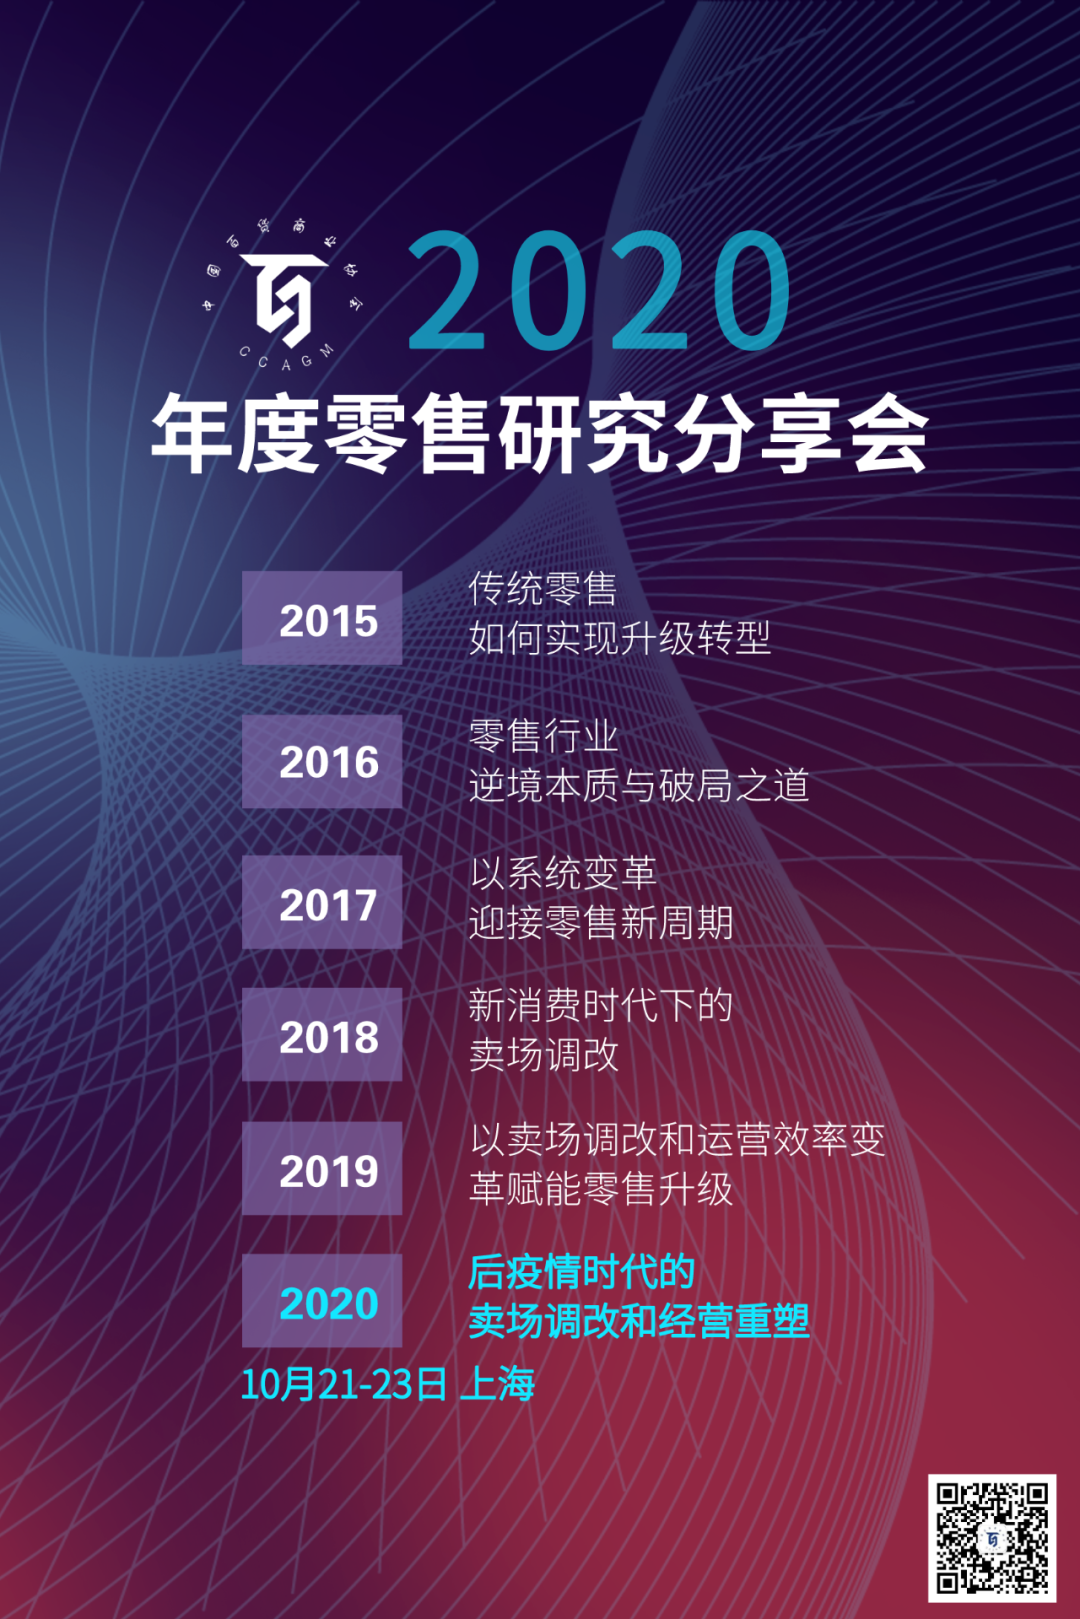 十月上海分享会宣传图 20200908.png